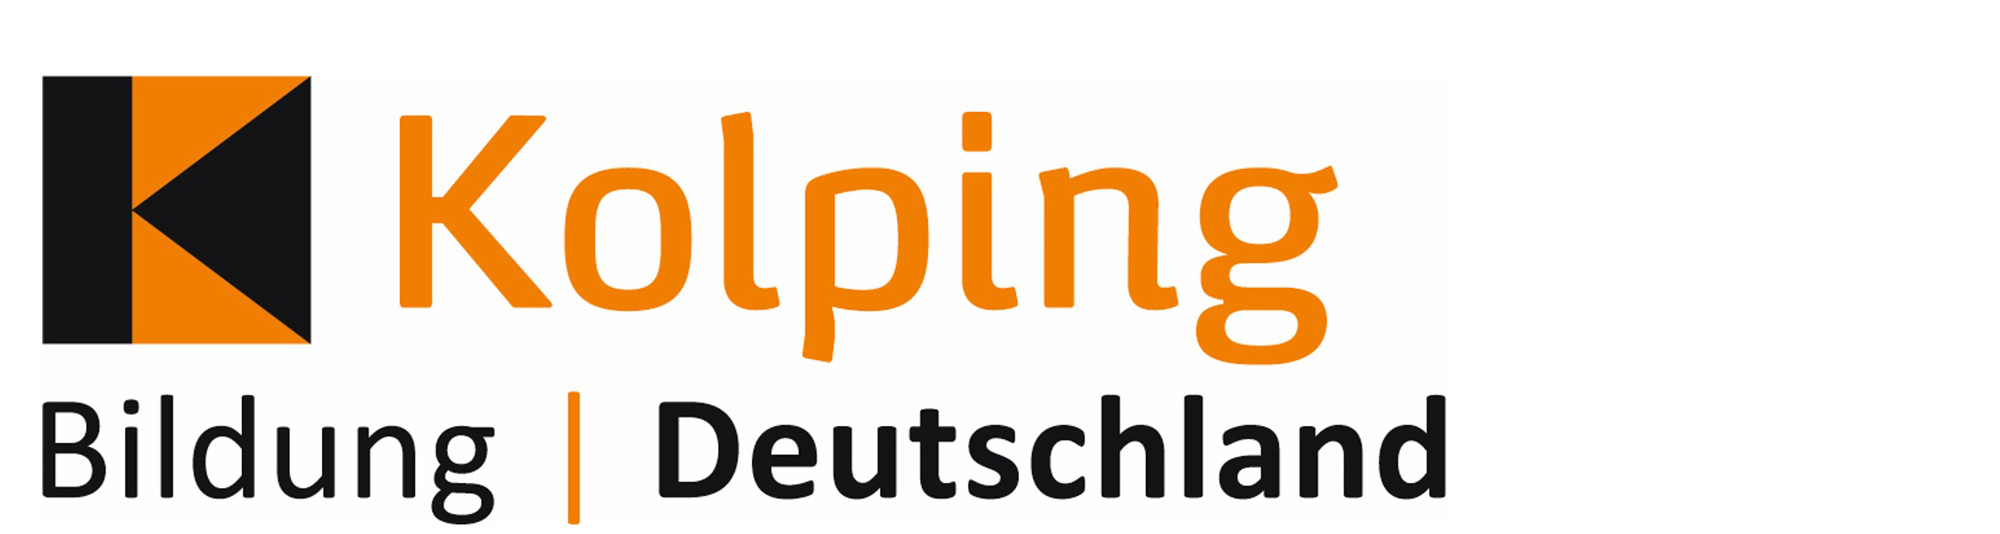 Kolping Bildung Deutschland gGmbH - Pflegeschule Moerse